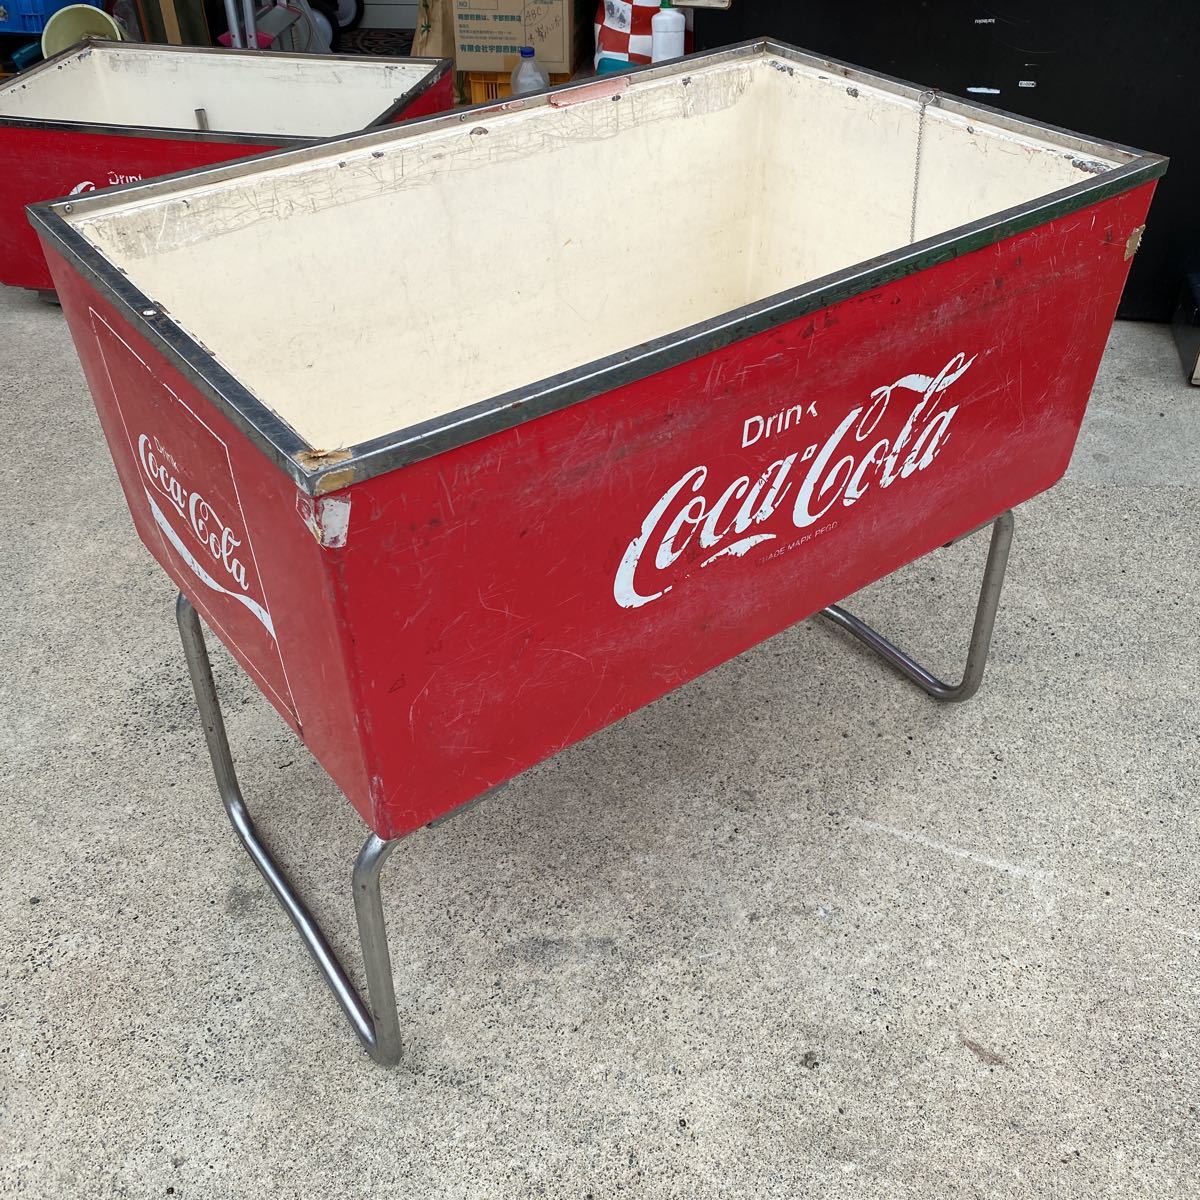  Coca Cola аквариум лед вода б/у редкий предмет не продается A